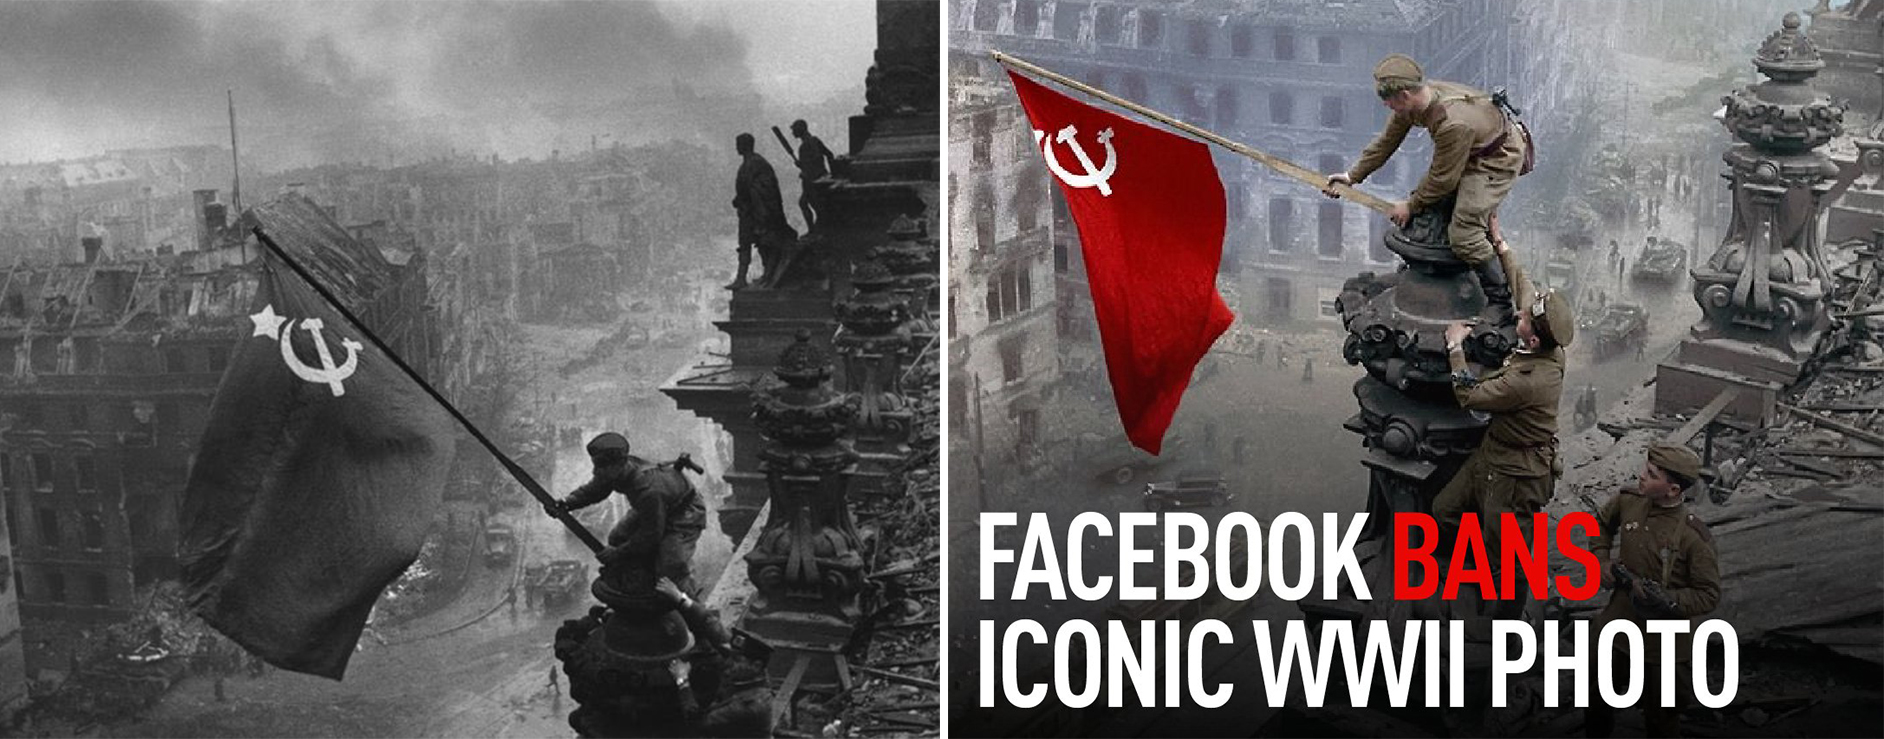 左為歷史上拍攝的照片A右圖為民間重新上色版本 圖自G社交媒體